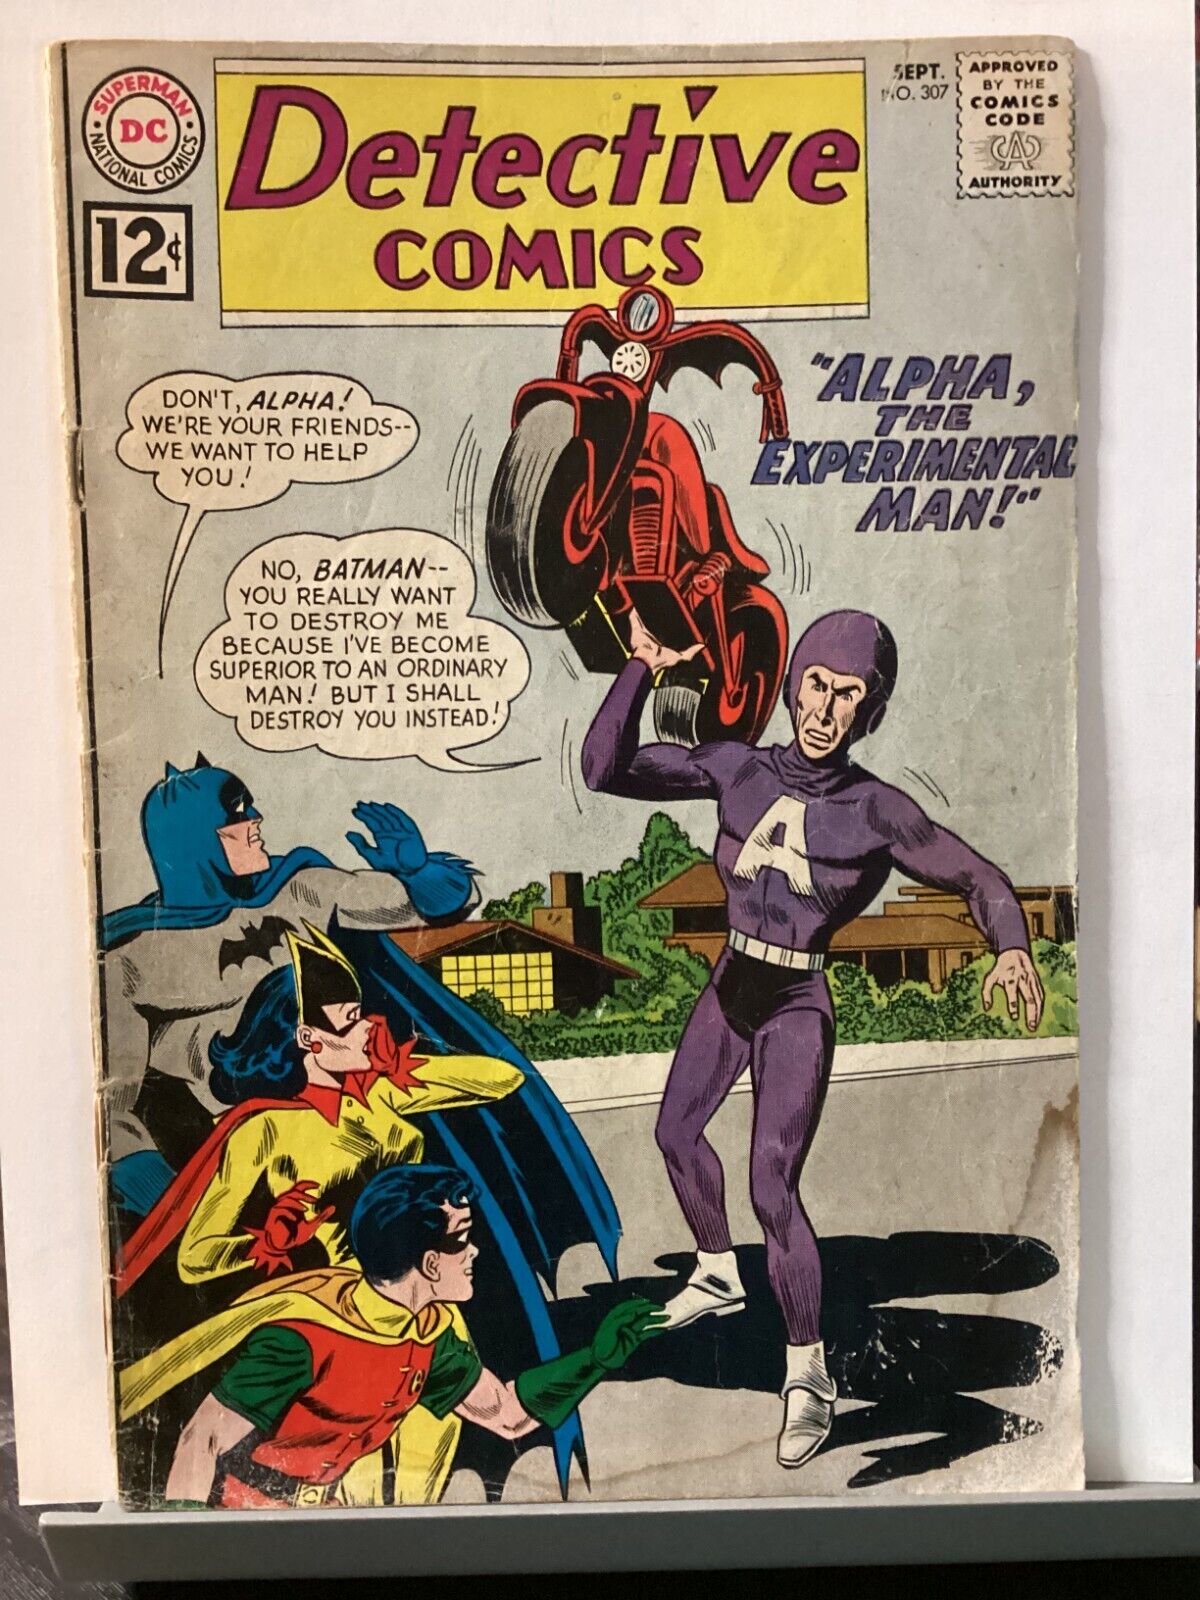 DETECTIVE COMICS #307 DC 1962 ALPHA EXPERIMENTAL MAN MOLDOFF SILVER AGE BATMAN